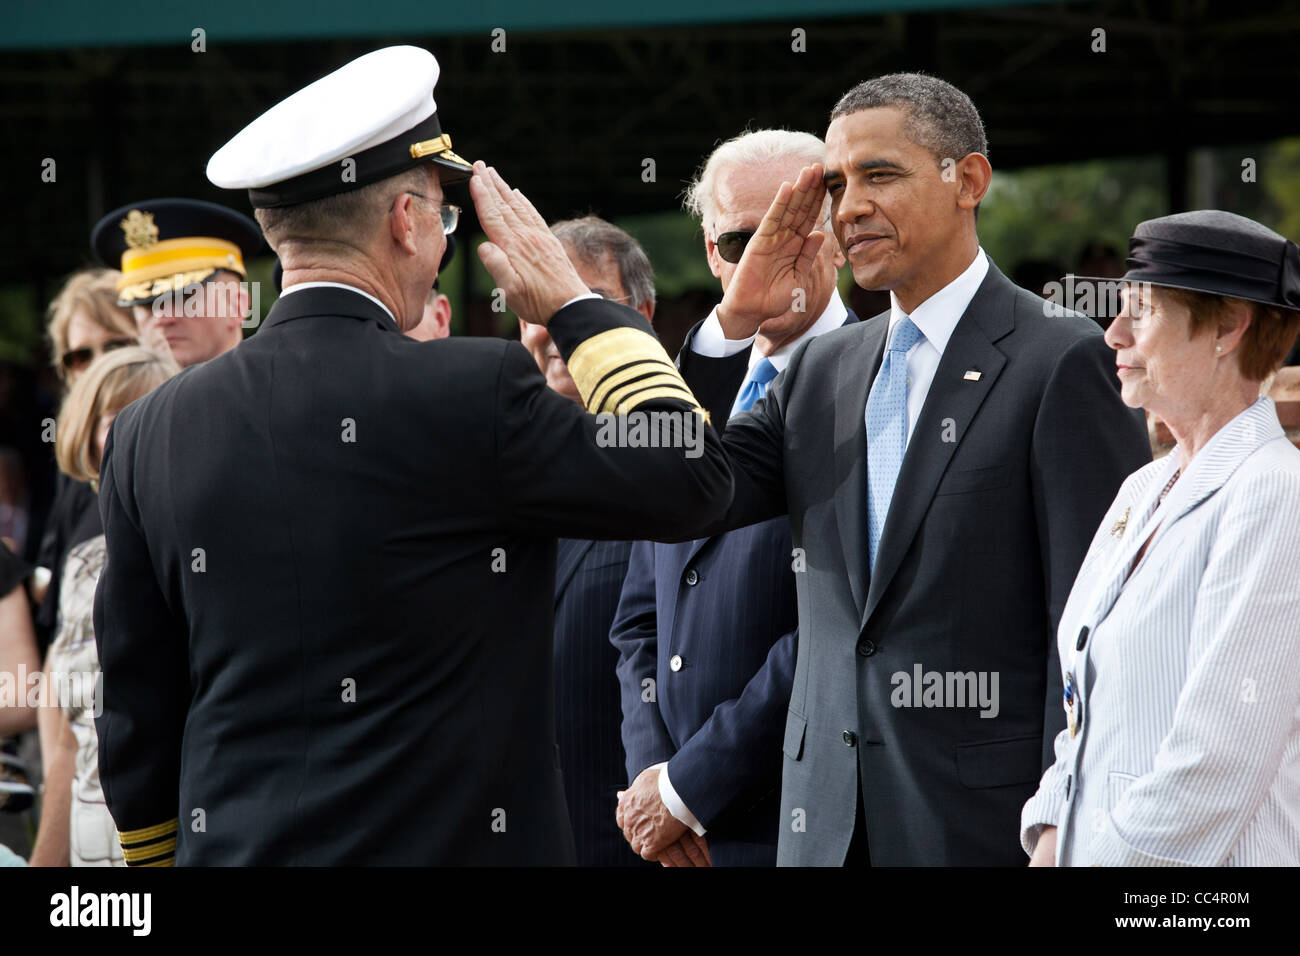 Le président Obama salue l'Amiral Mike Mullen, chef de l'état-major des Forces armées, au cours de l'hommage d'adieu. Banque D'Images